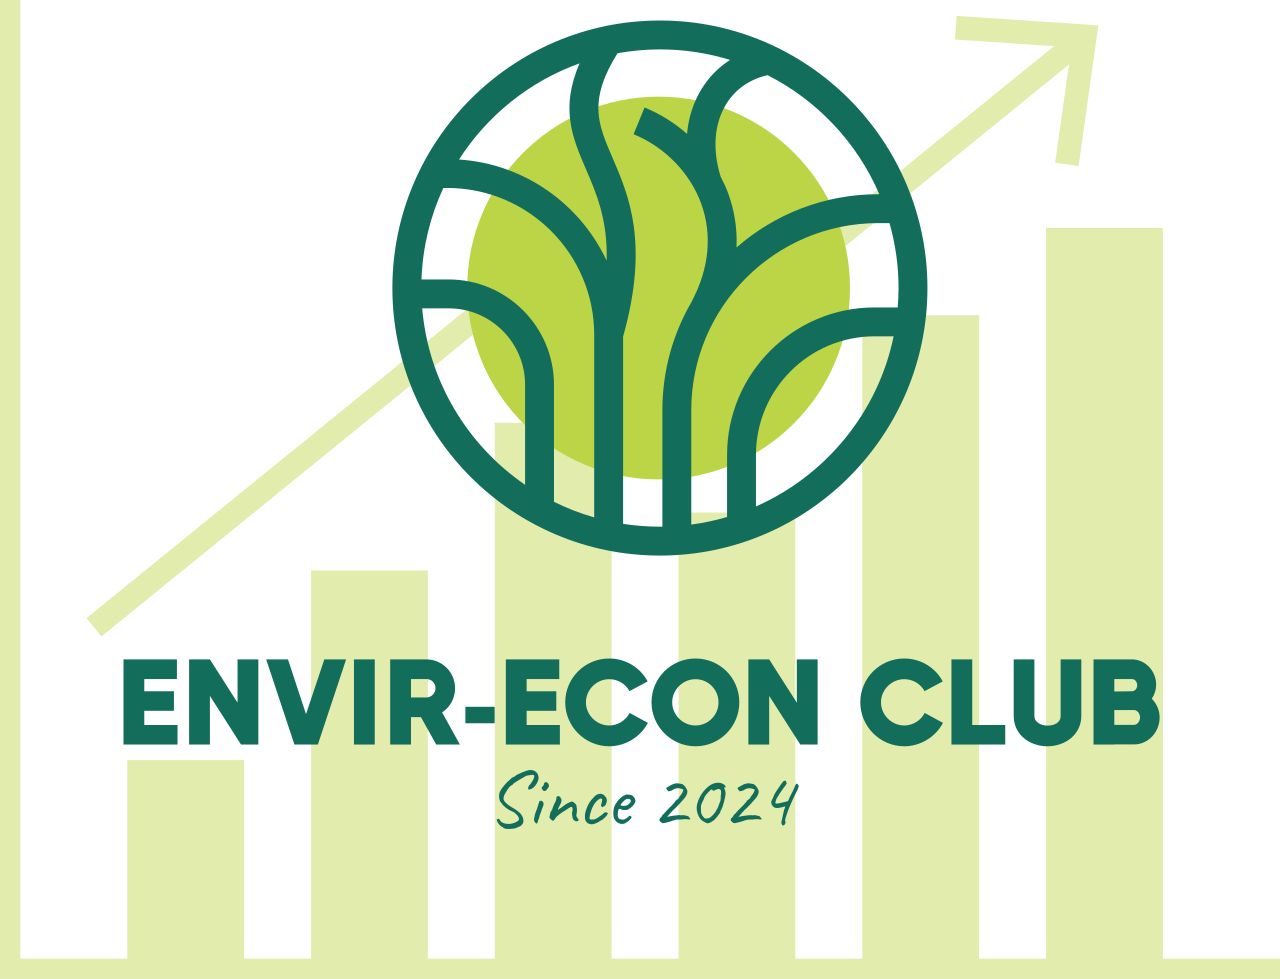 Envir-Econ Club's logo